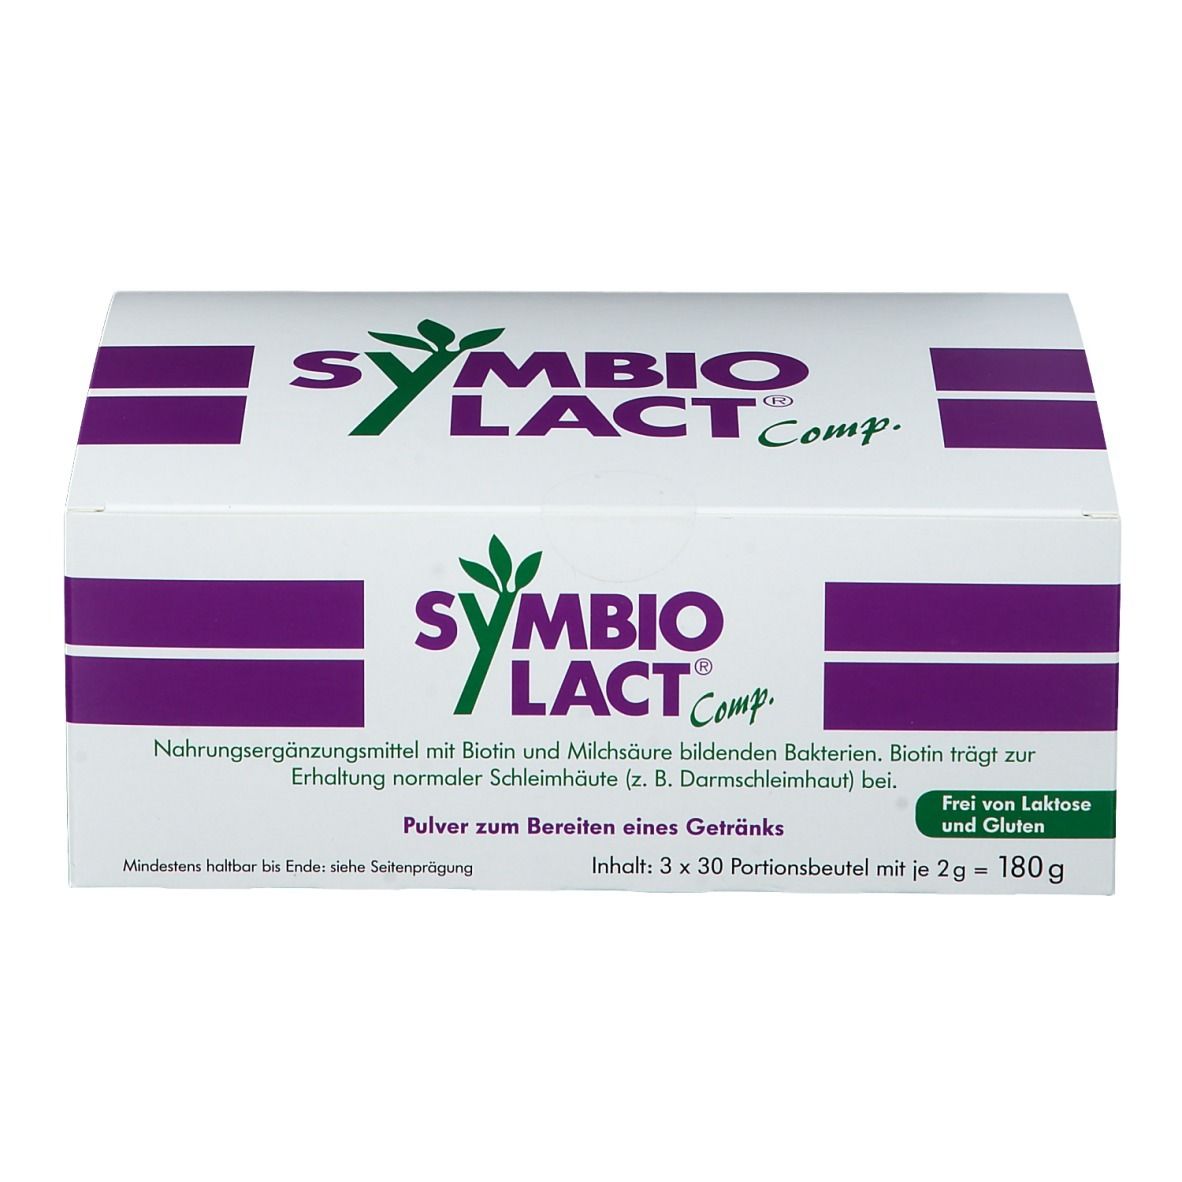 SymbioLact® Comp